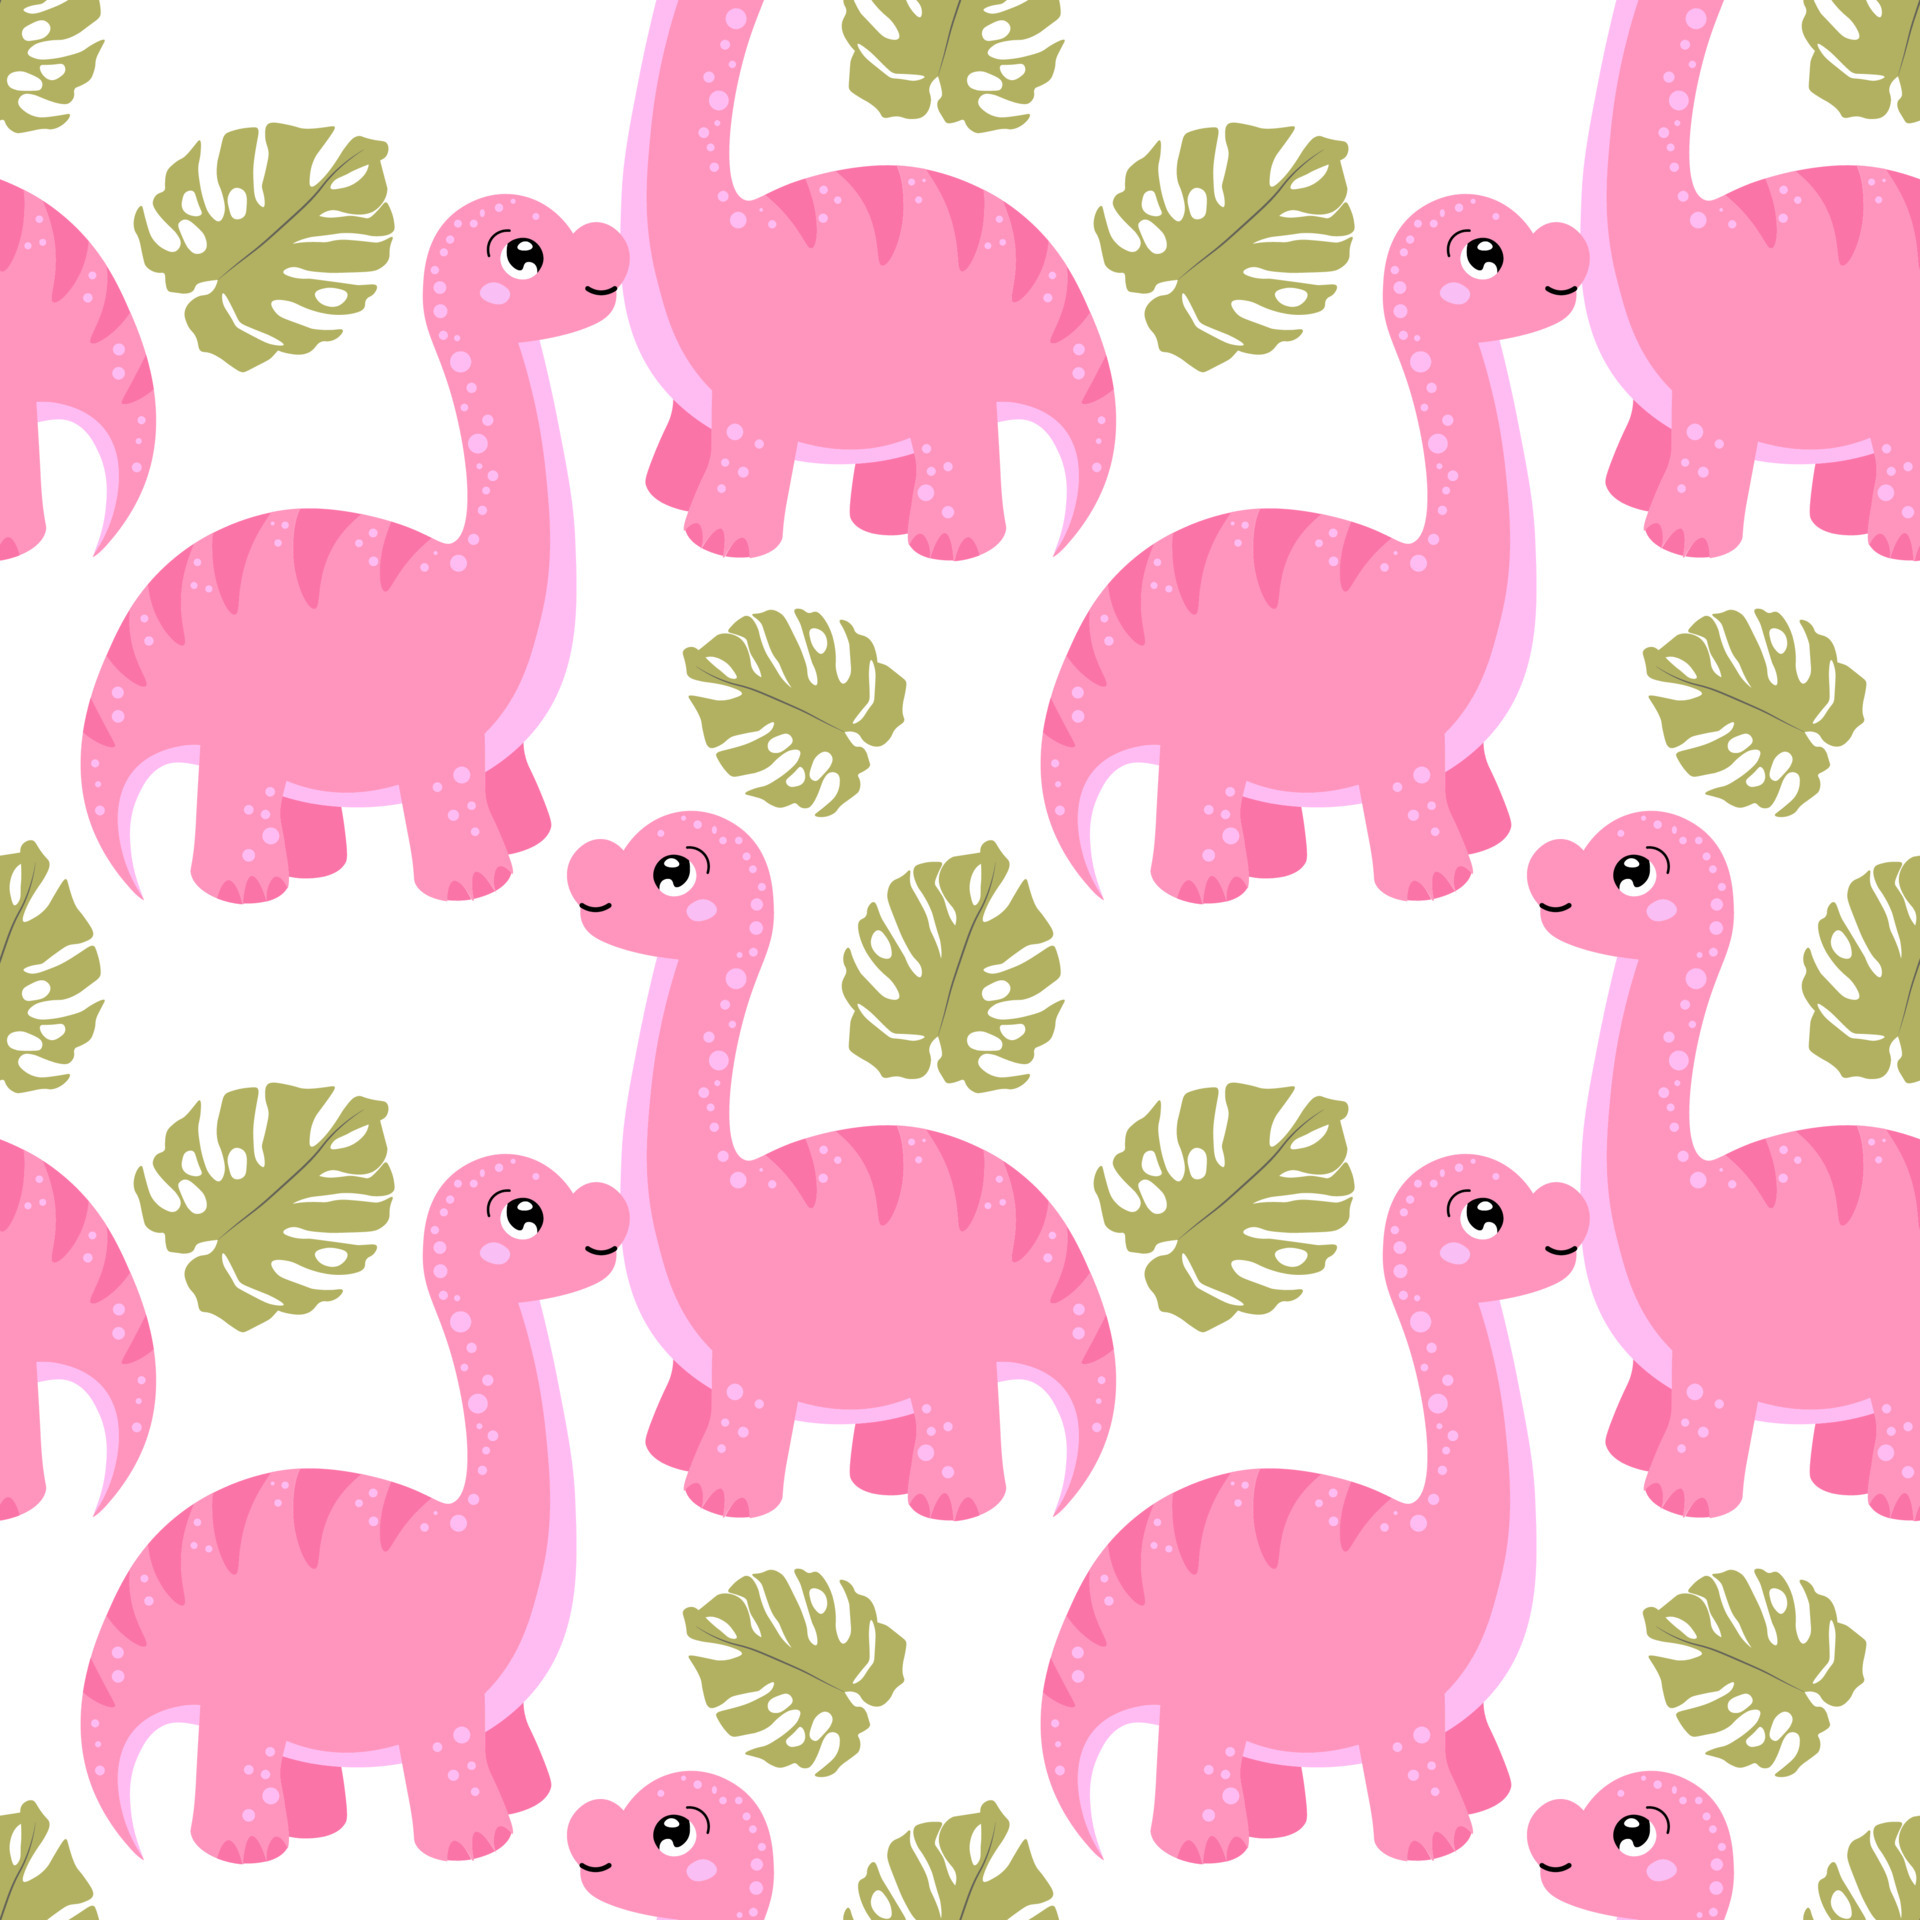 Hãy xem hình nền hồng cute cùng con khủng long để cảm nhận sự hài hước và đáng yêu của chúng nhé!